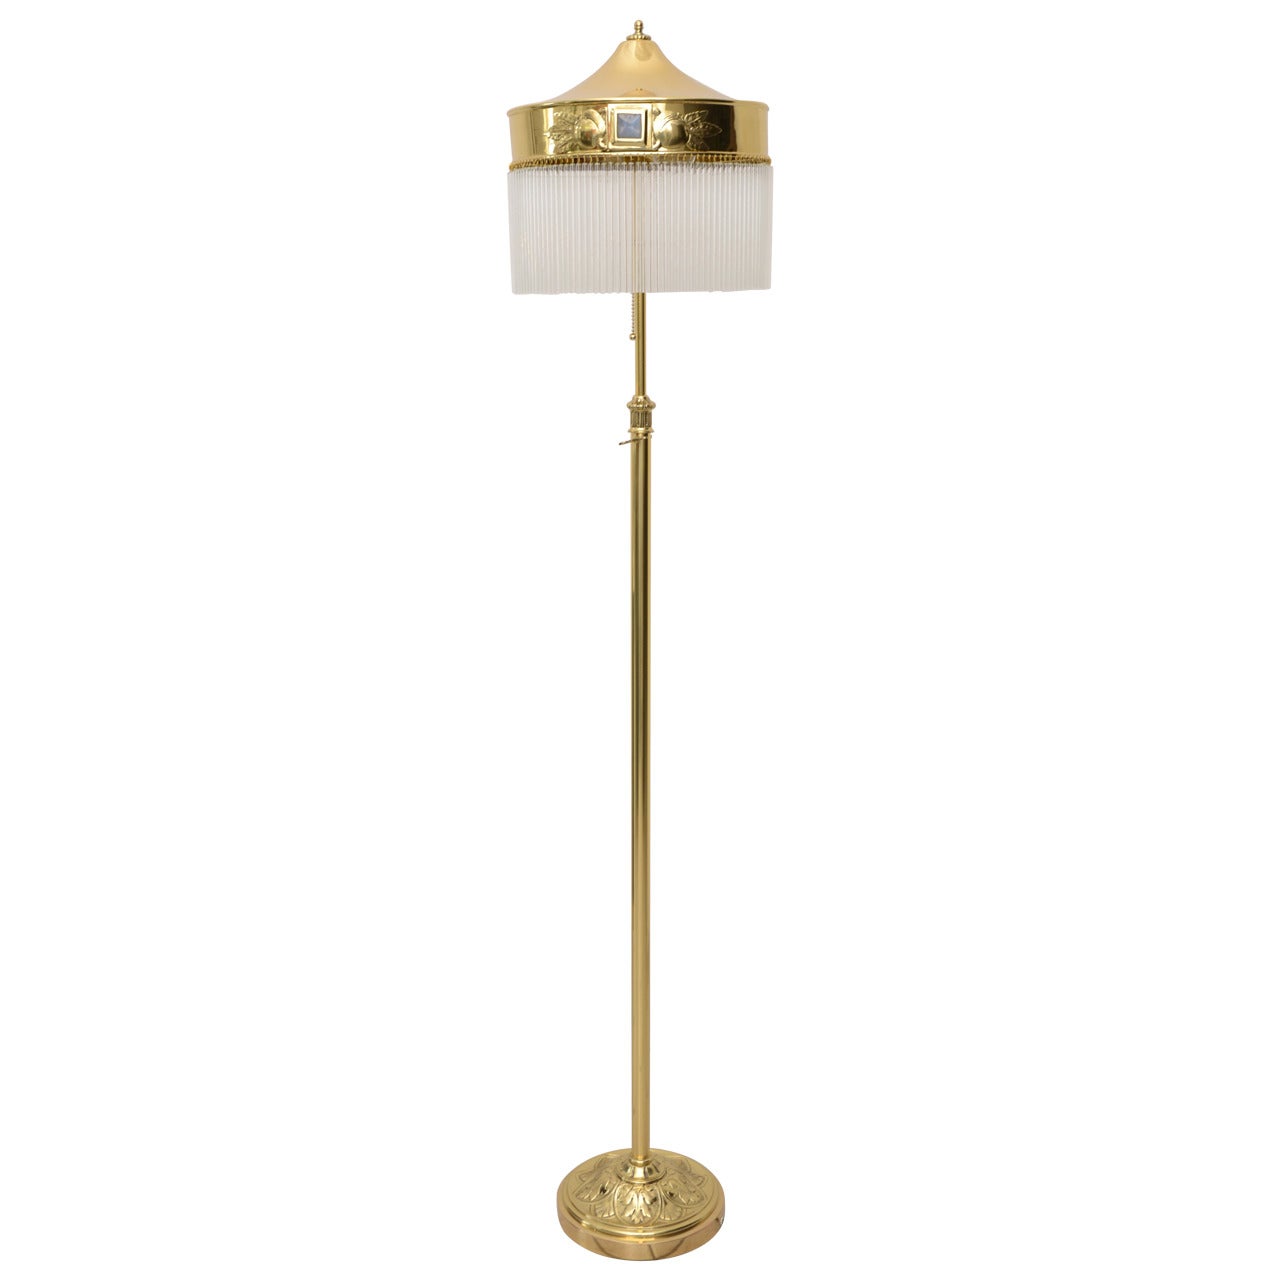 Adjustable Jugendstil Floor Lamp with Opal Glass Stones